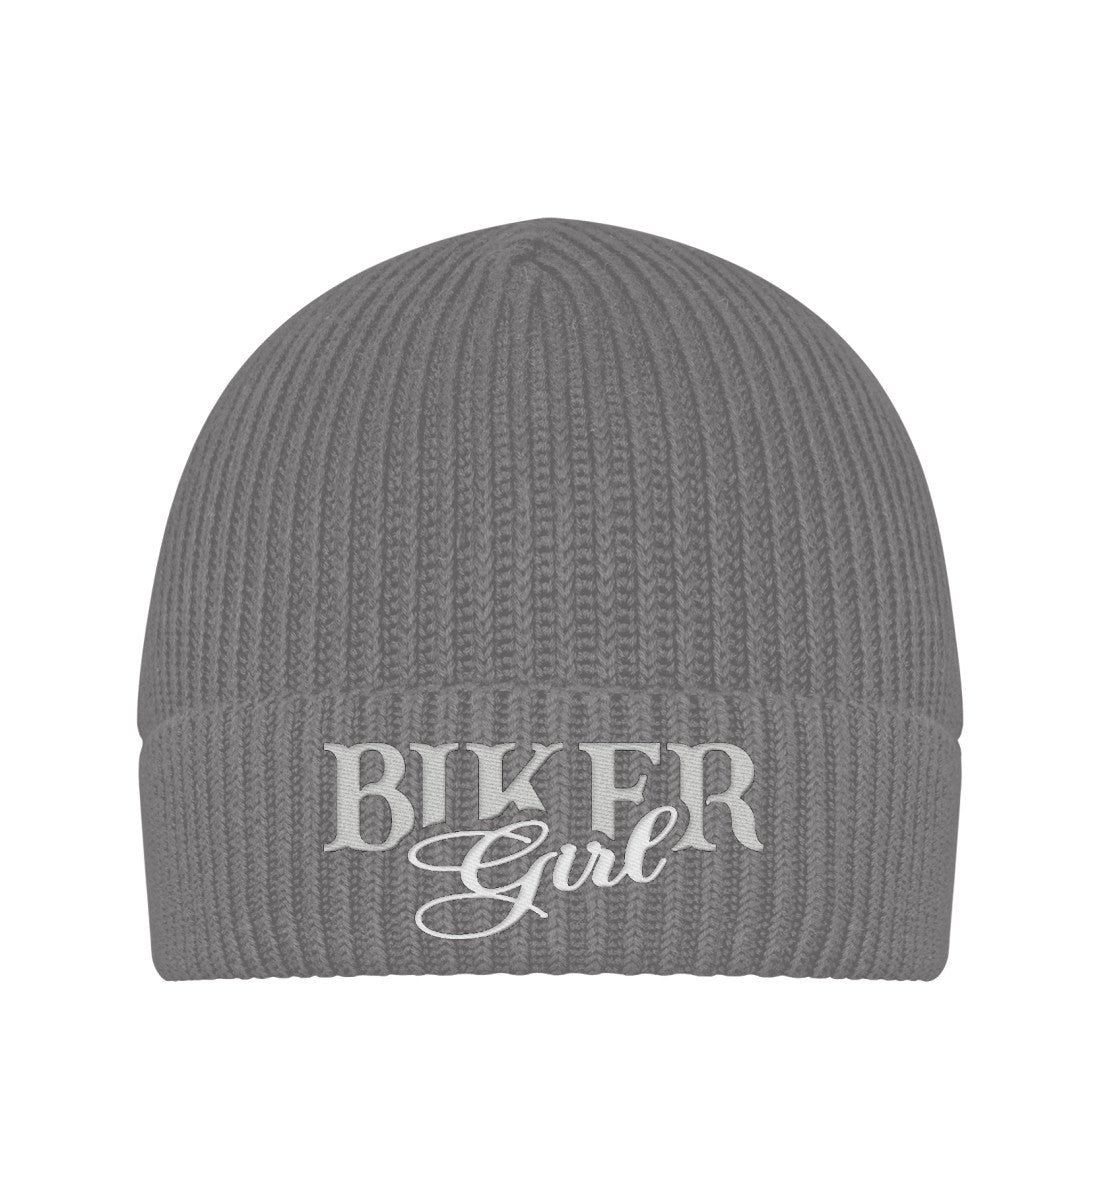 Eine Bikerin Beanie Mütze für Motorradfahrerinnen von Wingbikers mit dem Stick, Biker Girl, in grau.